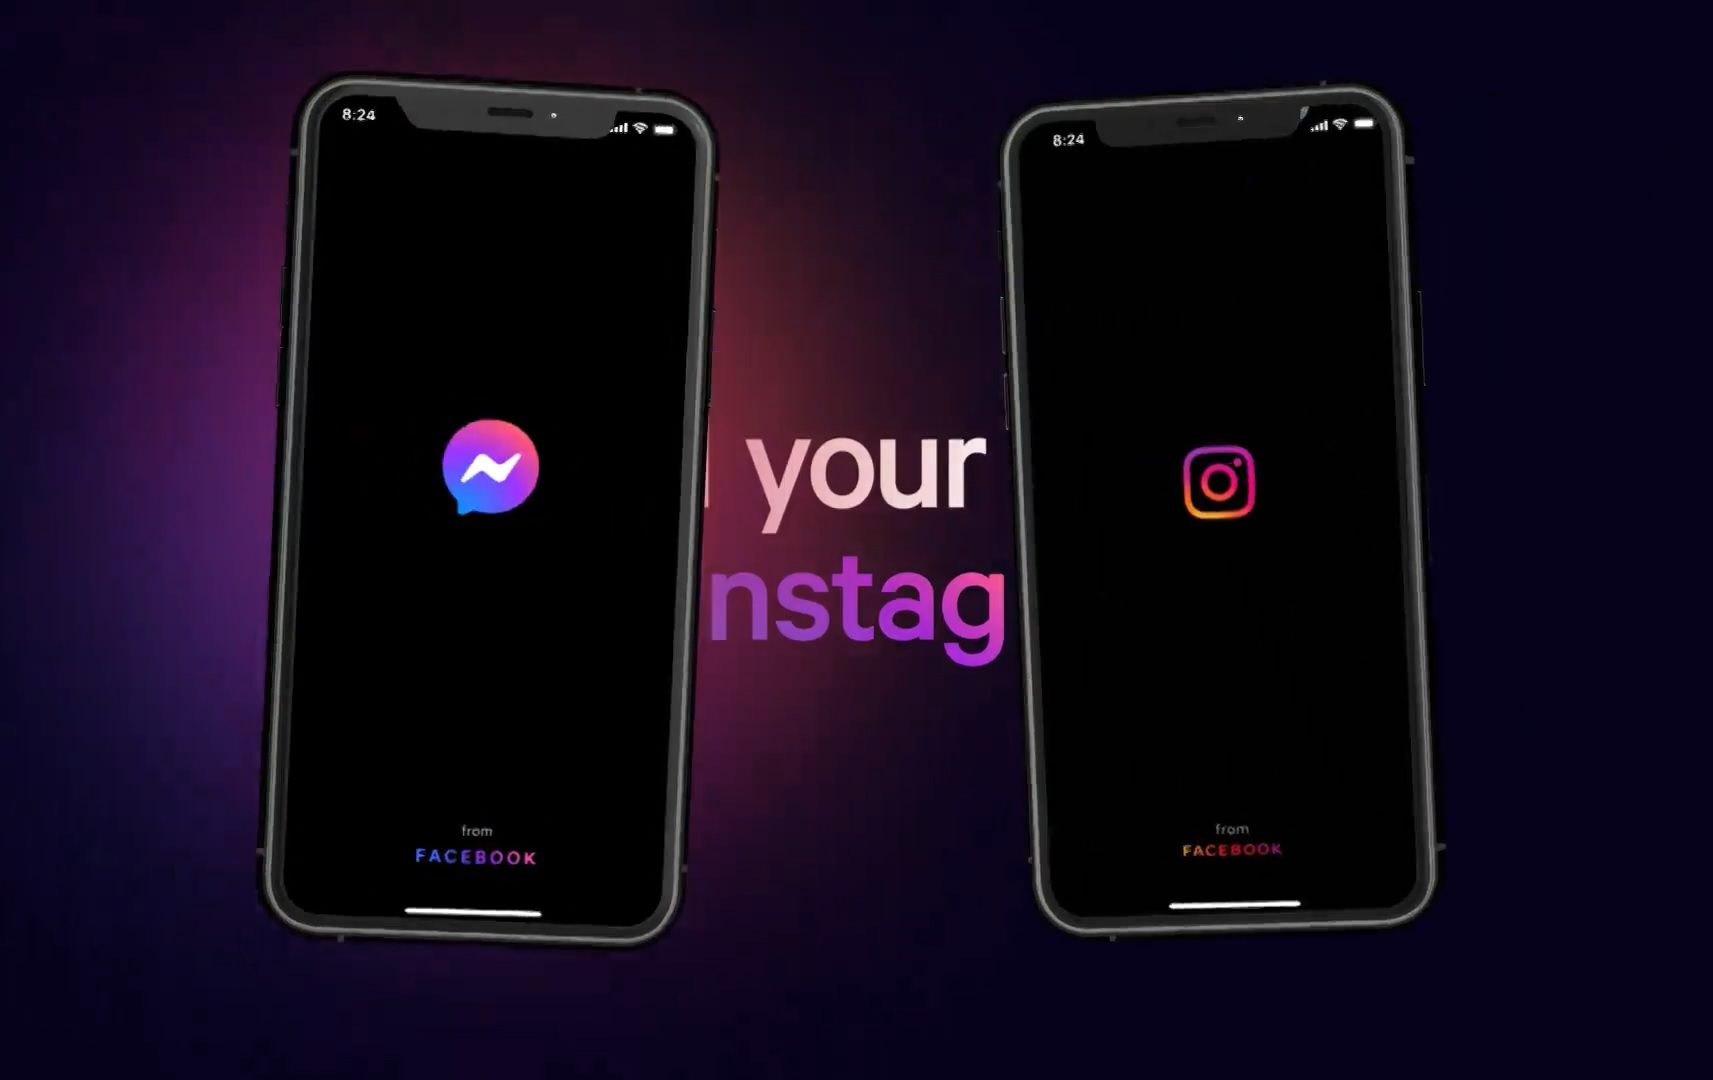 A mudança no logo e a integração entre Facebook Messenger e Instagram é anunciada como o "futuro da mensagem"